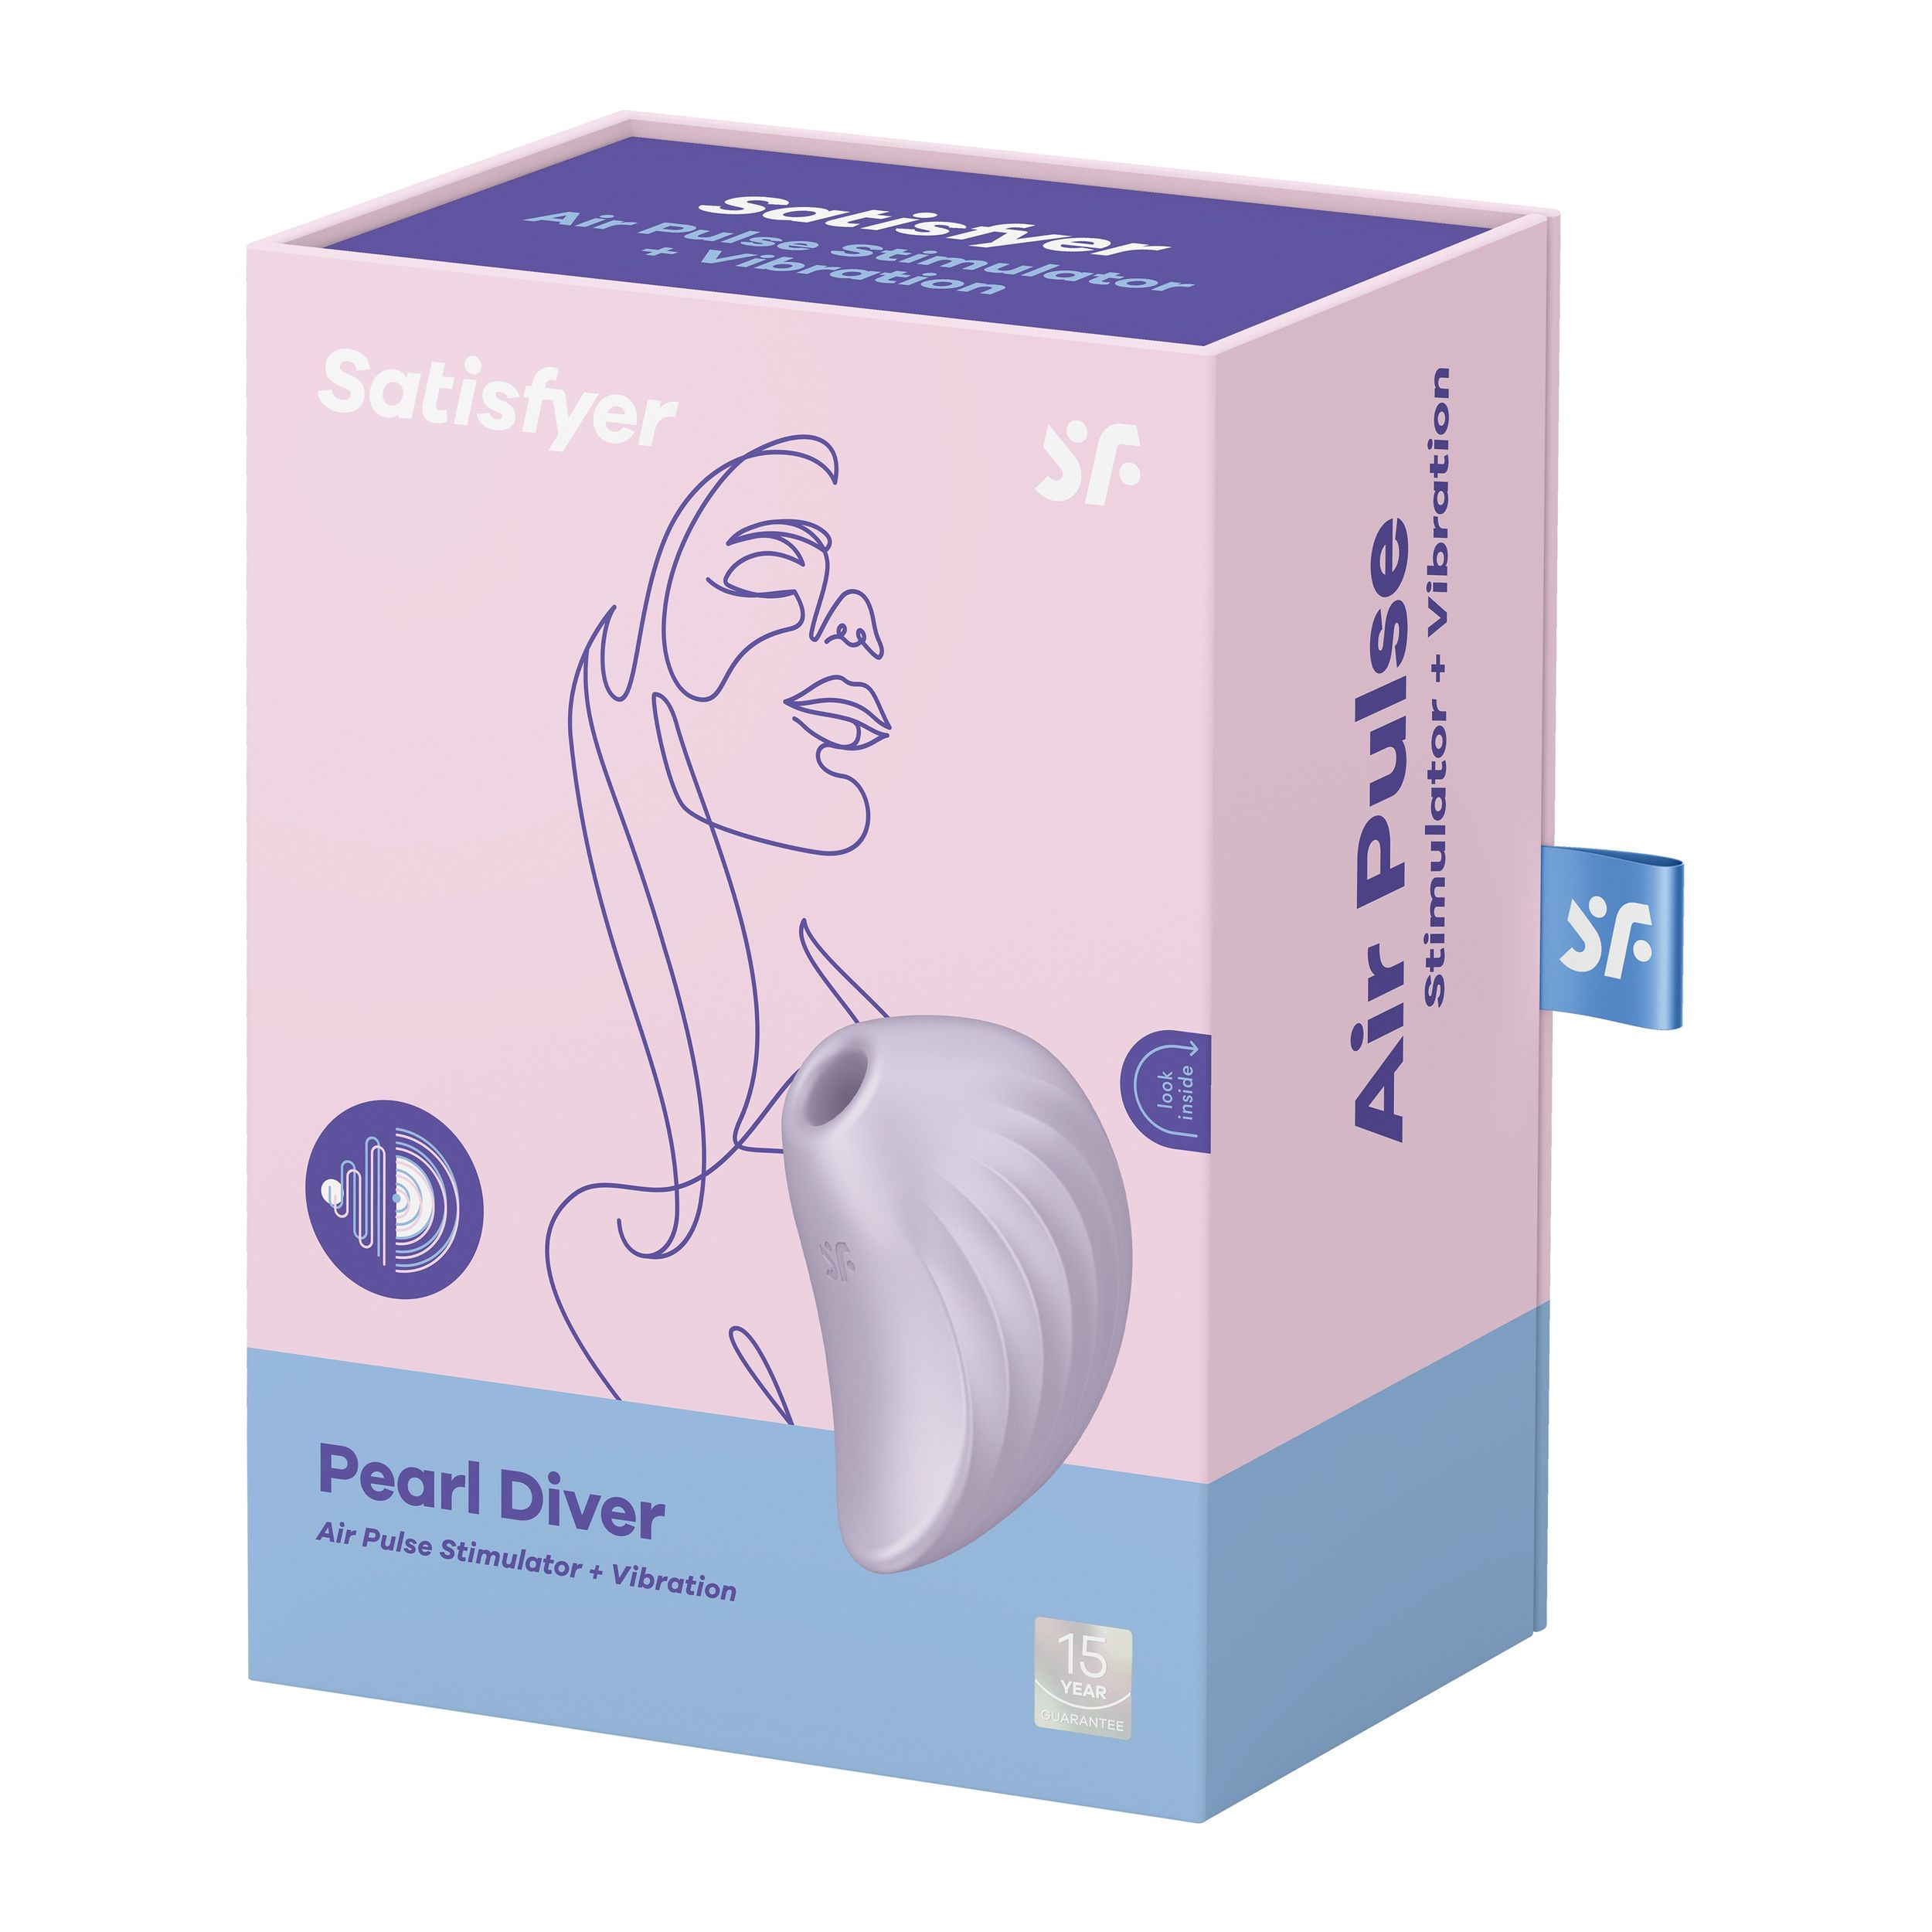 SATISFYER Satisfyer Pearl Diver auflegevibratoren - Violett